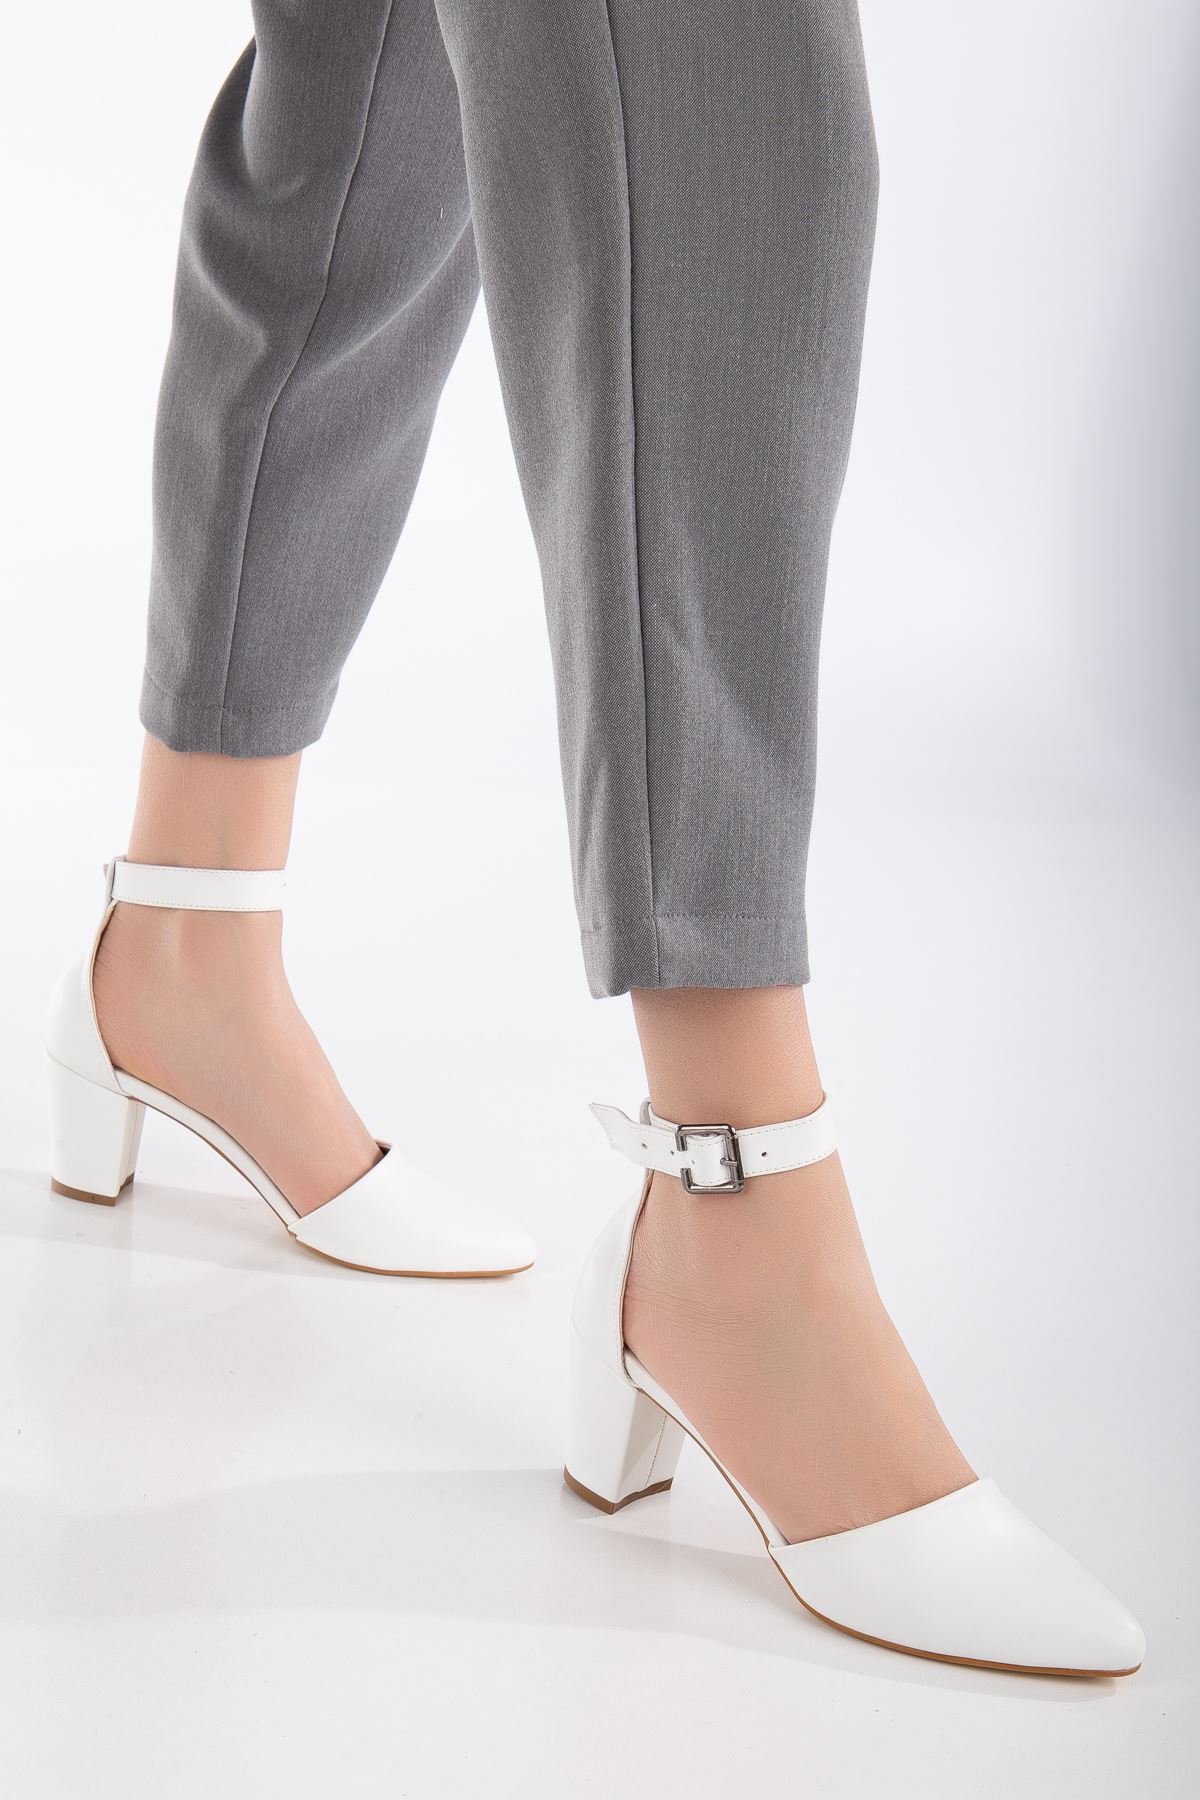 Lottis Beyaz Cilt Detaylı Topuklu Kadın Ayakkabı 